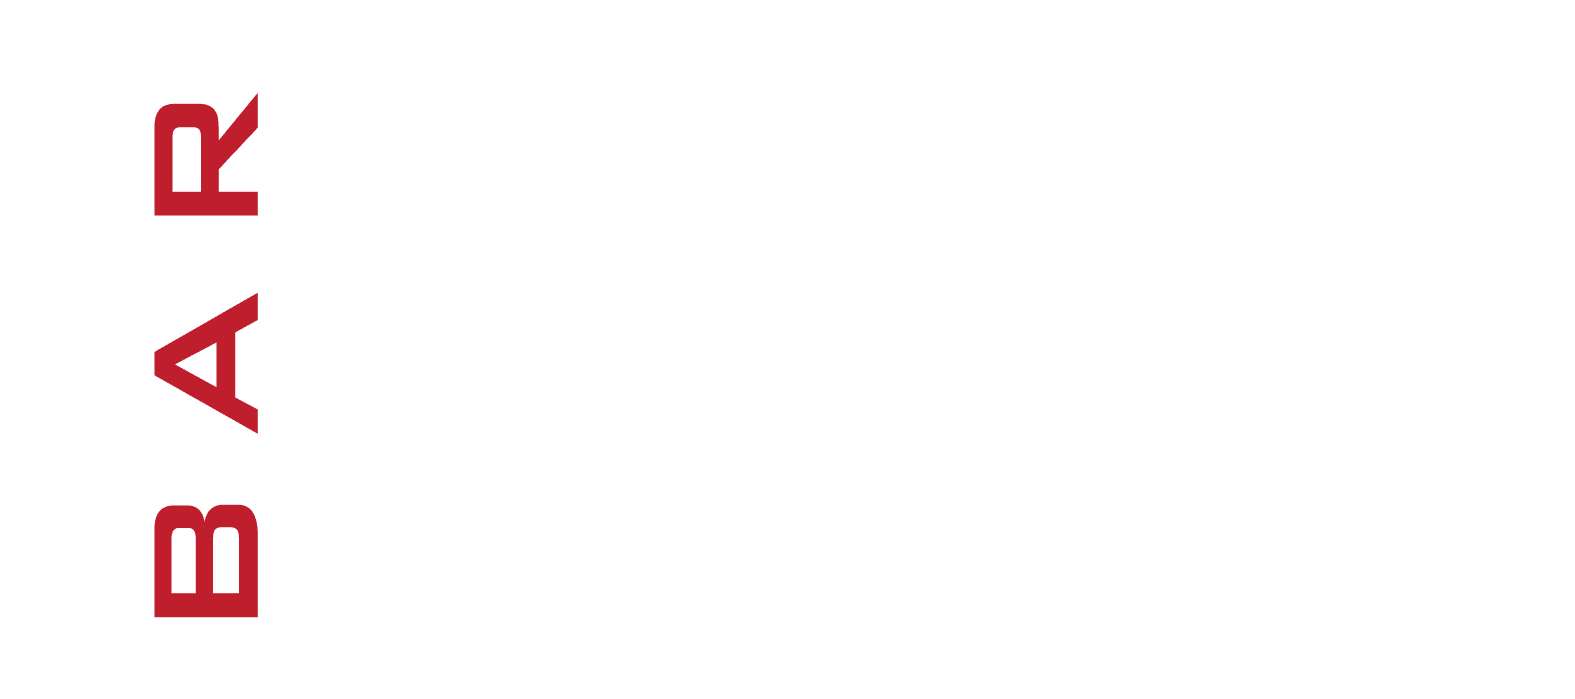 Bao Logo - Bar-Bao-Logo | Clarendon Day 2018